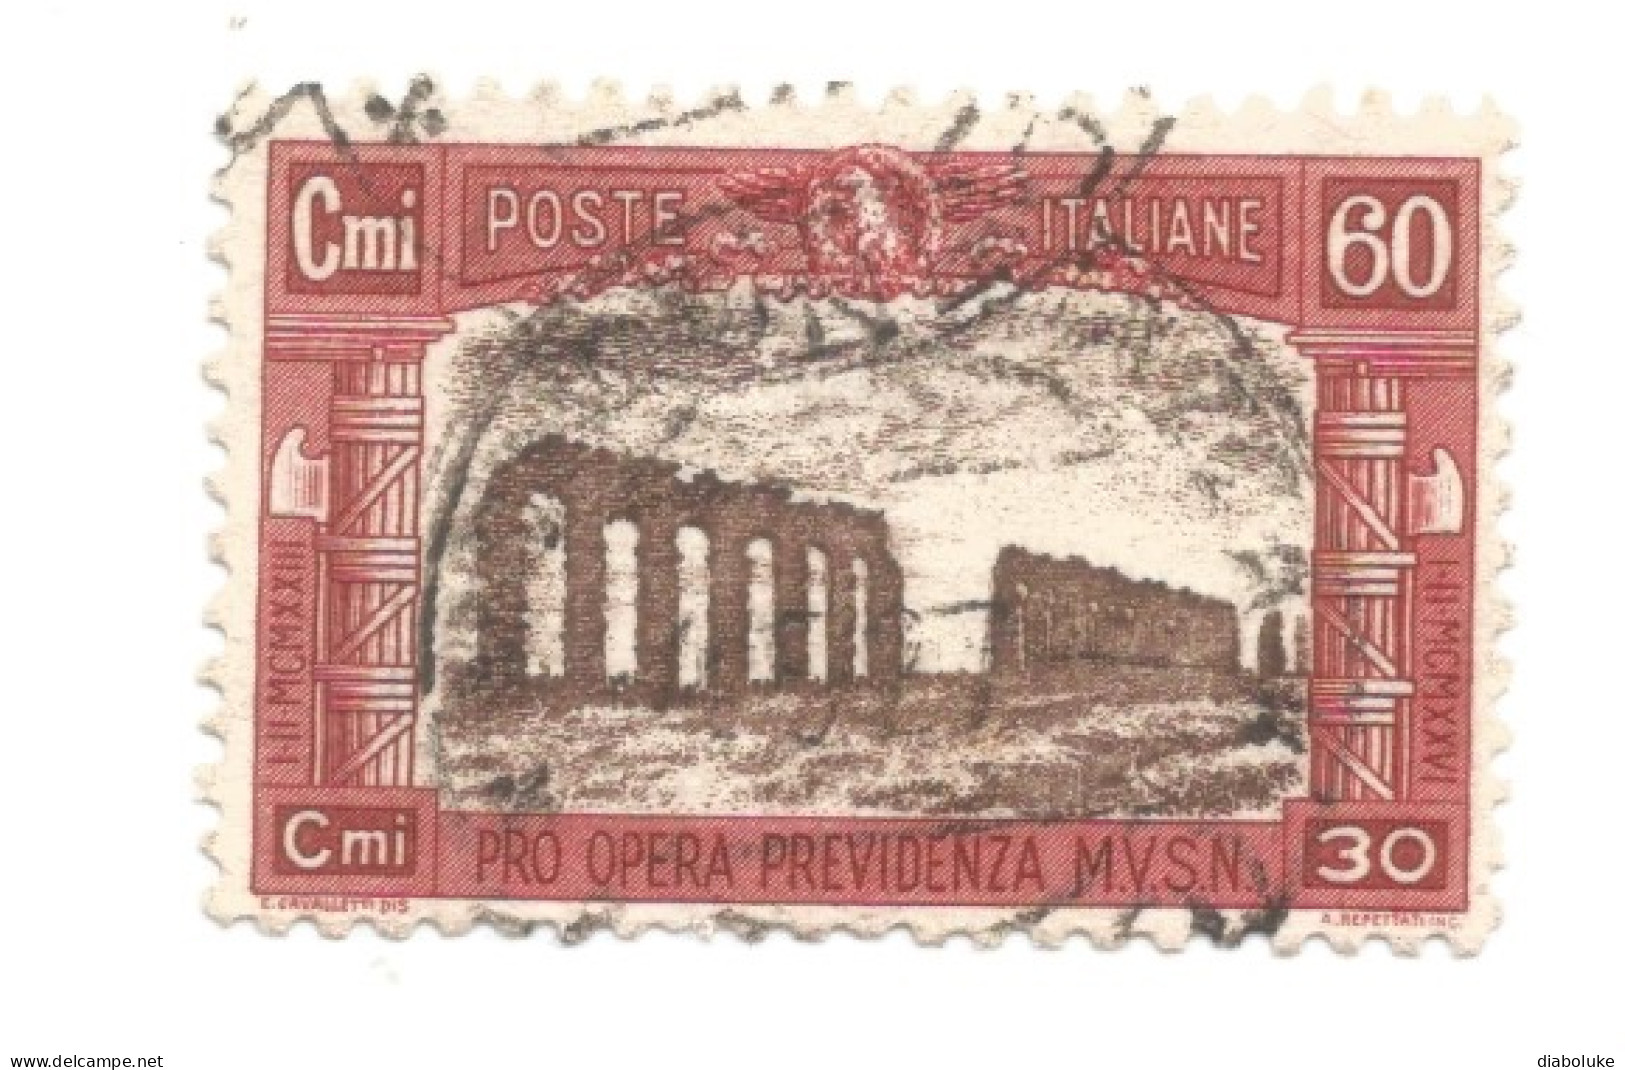 (REGNO D'ITALIA) 1926, PRO OPERA PREVIDENZIA MILIZIA - Serie Di 4 Francobolli Usati, Annulli Da Periziare - Correo Aéreo